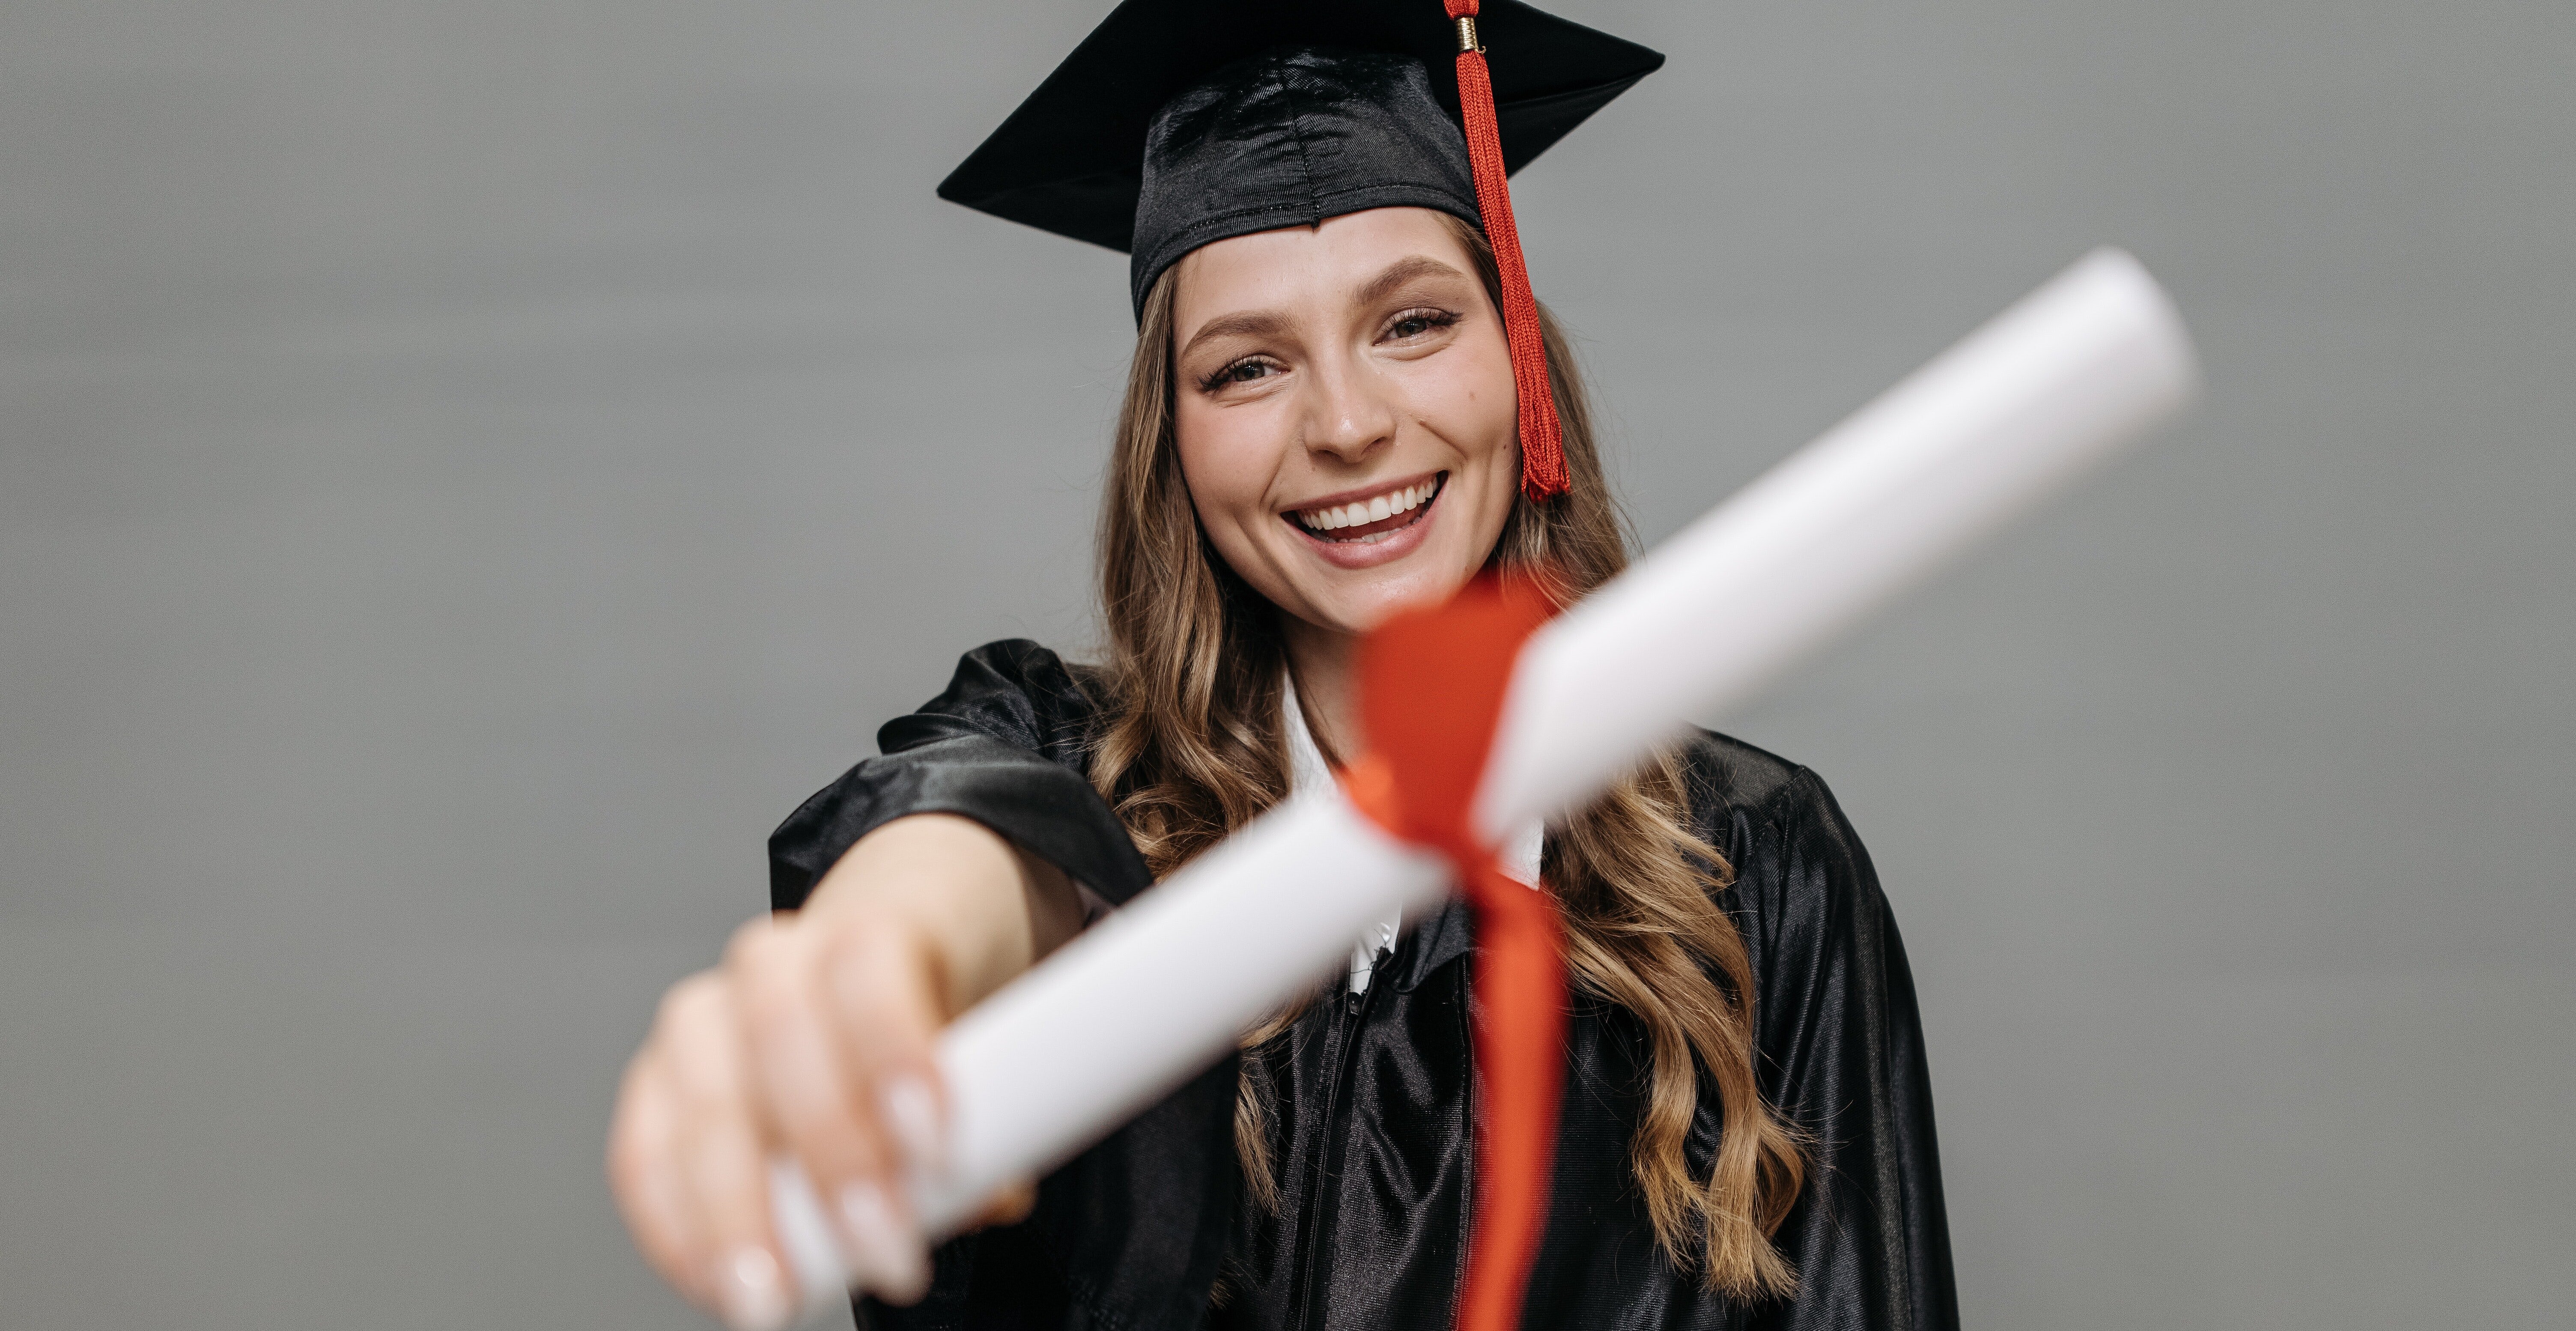 Na foto, uma menina mostra seu diploma para a câmera. Ela está de beca, com capelo e está sorrindo.